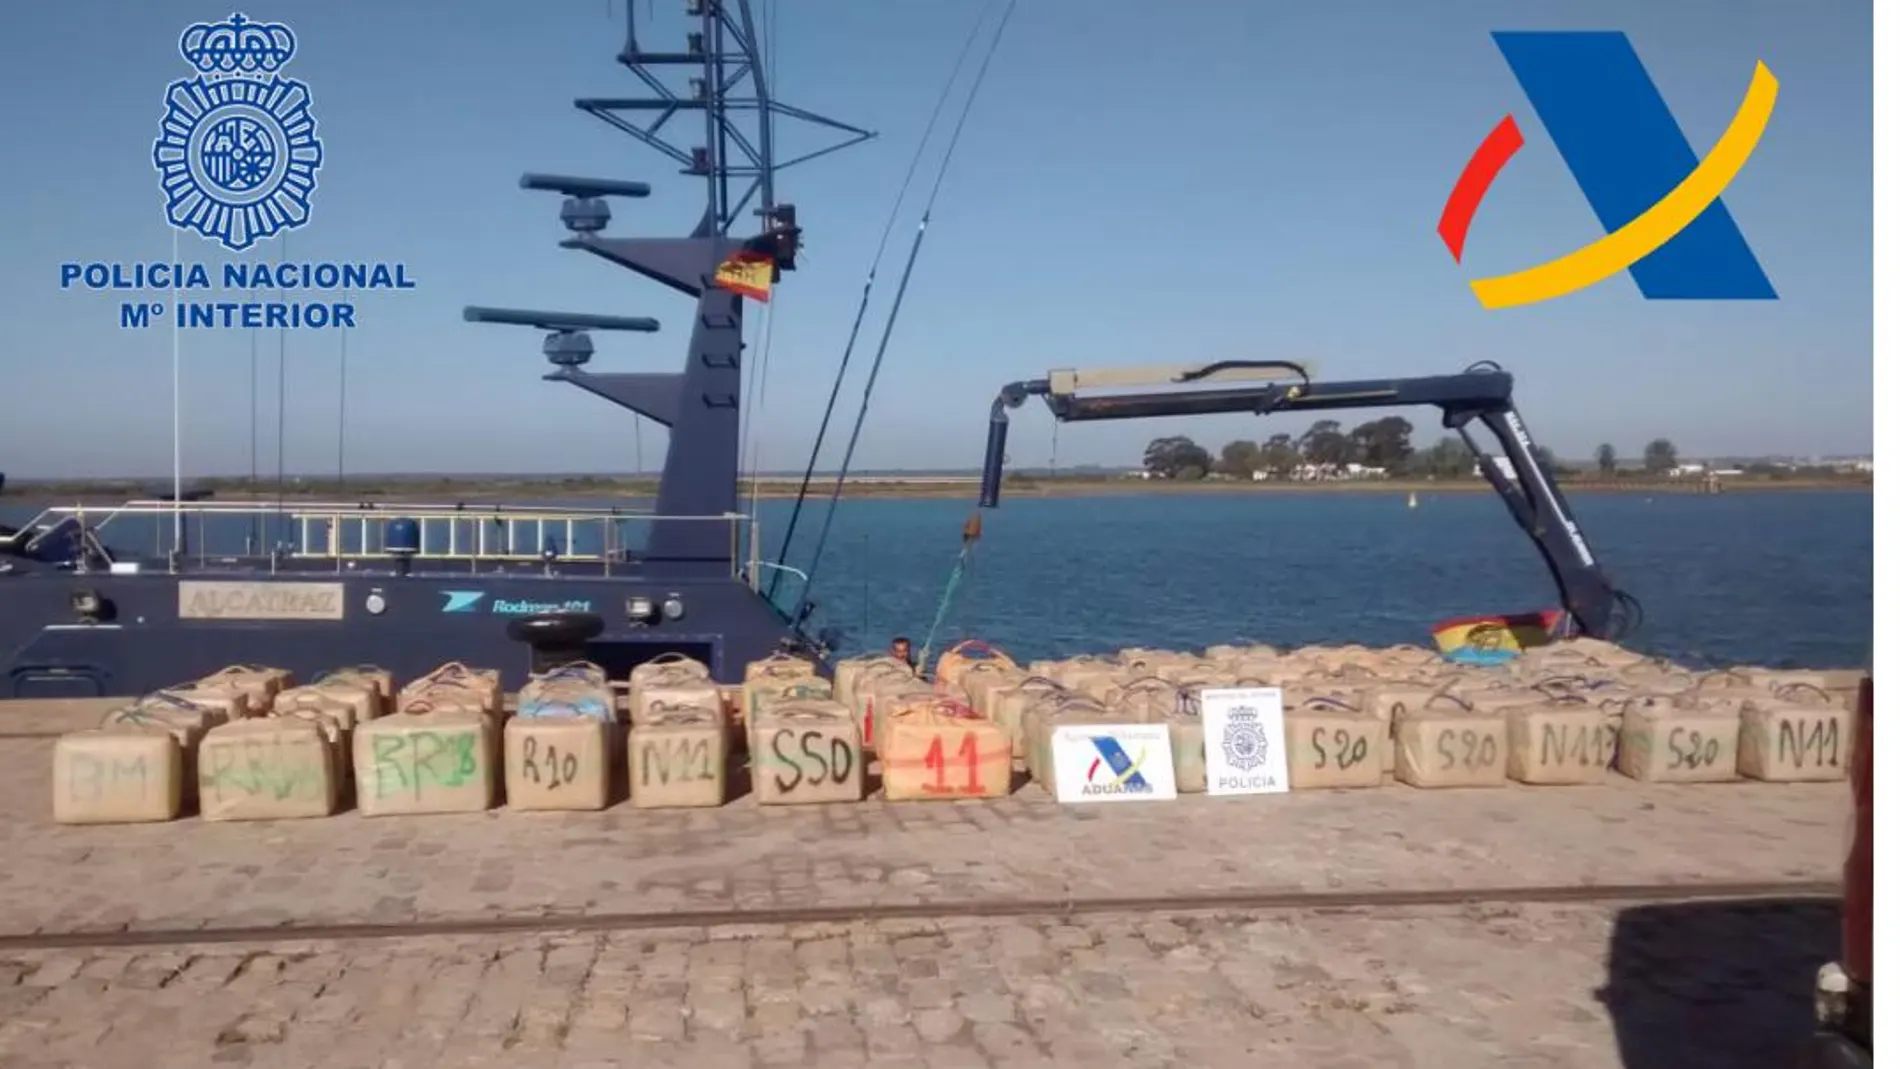 Aprehendidas más de seis toneladas de hachís en las costas de Huelva